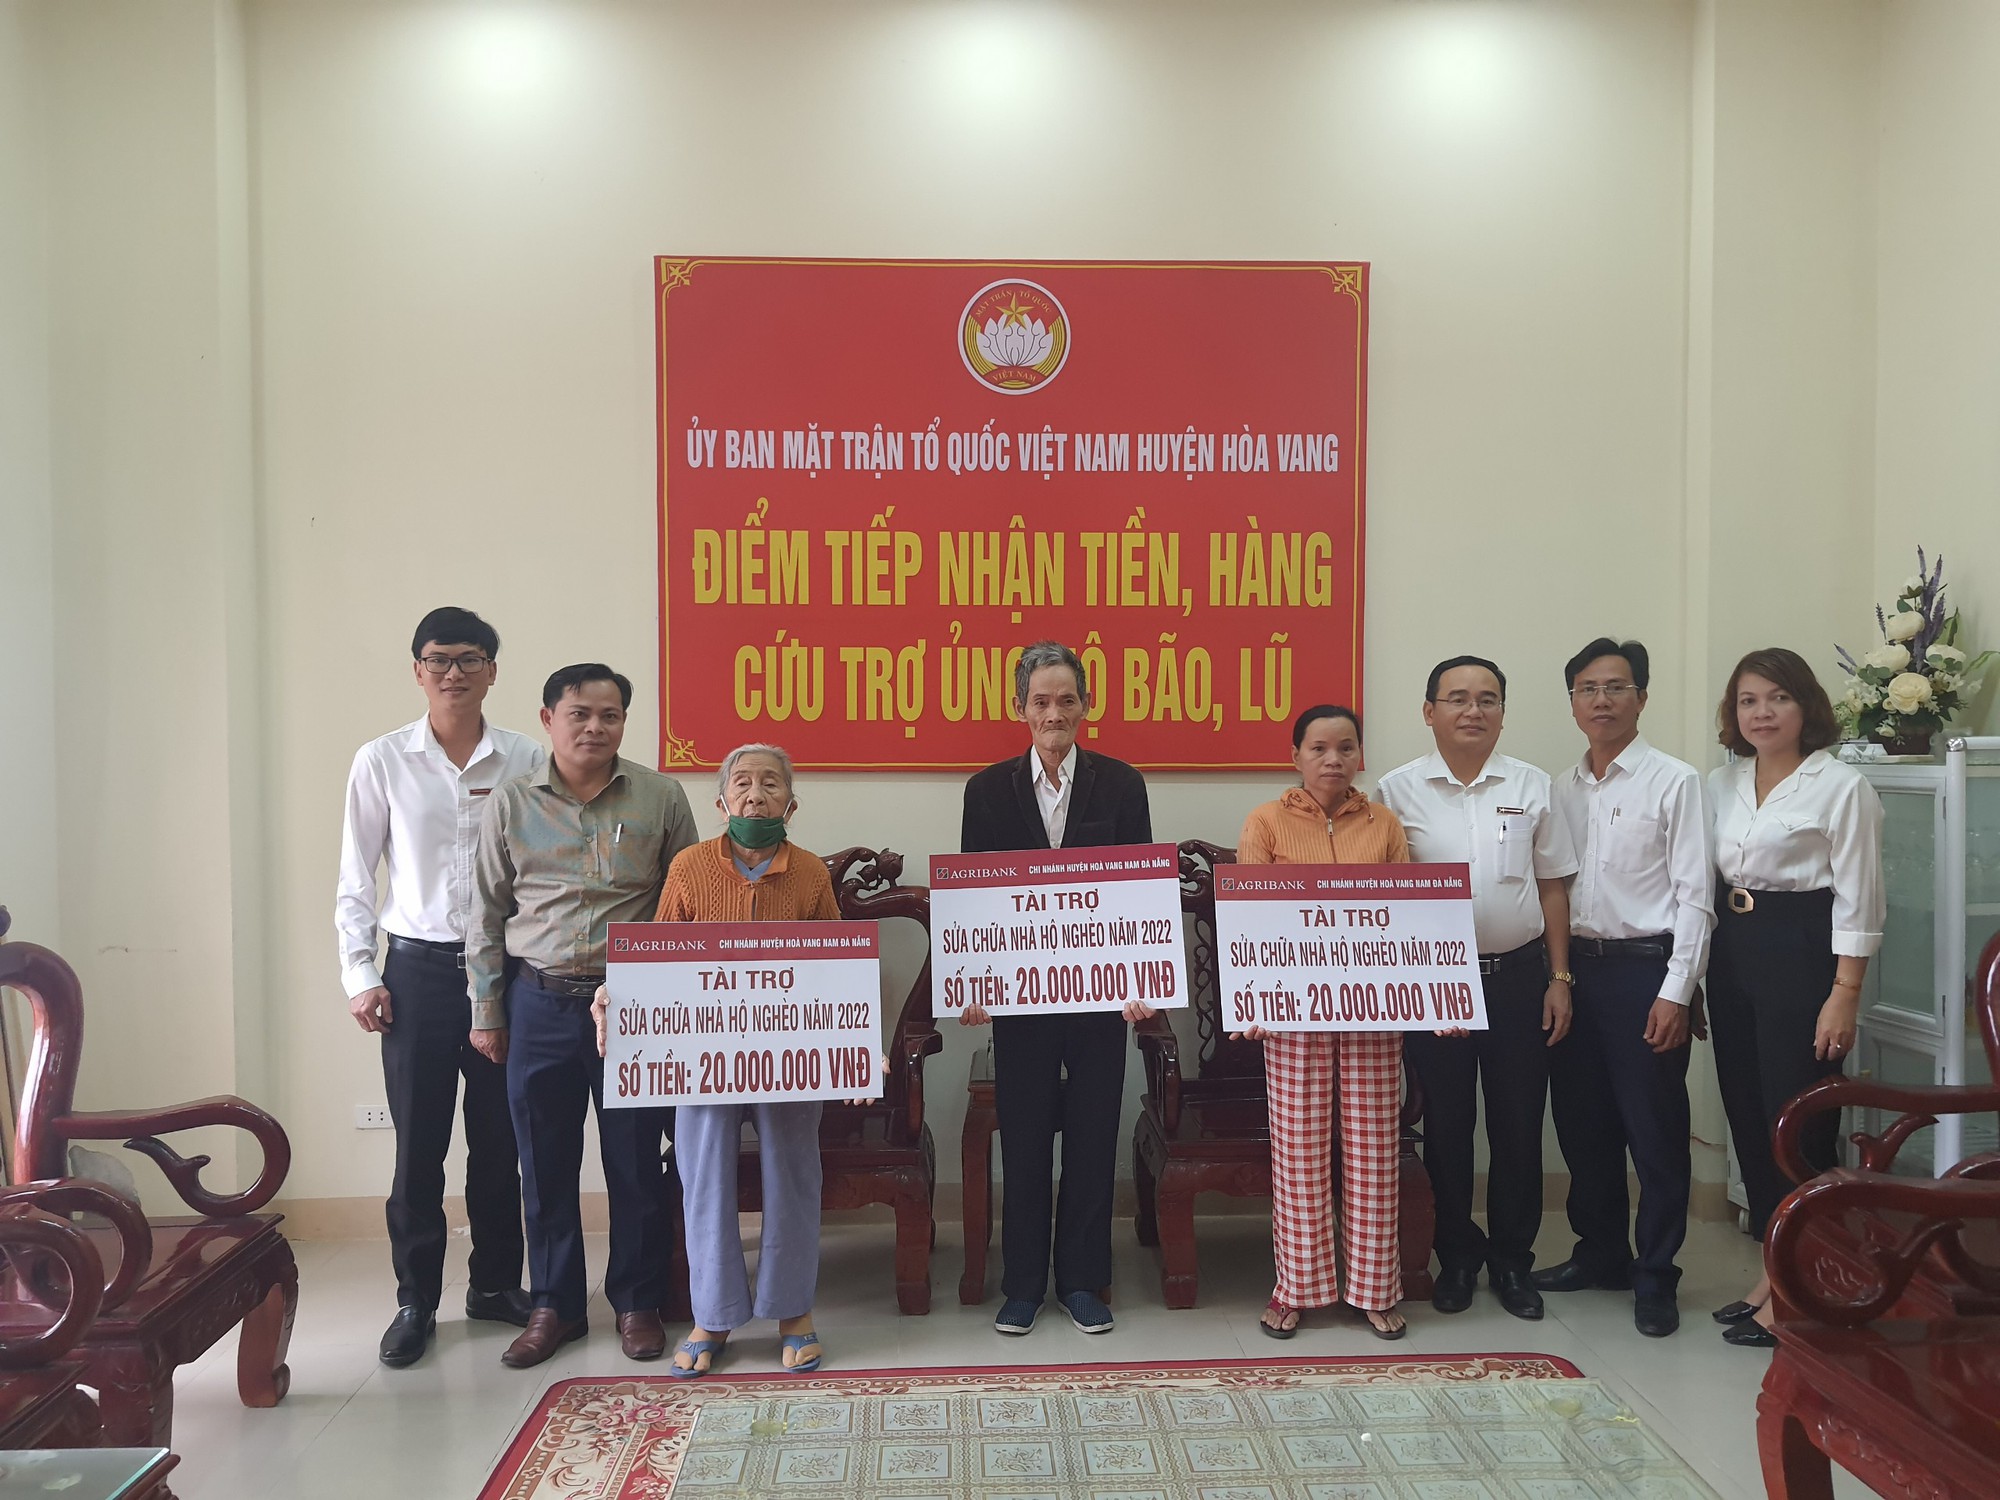 Agribank Chi nhánh huyện Hòa Vang - Nam Đà Nẵng trao kinh phí hỗ trợ sửa chữa nhà cho hộ nghèo - Ảnh 1.